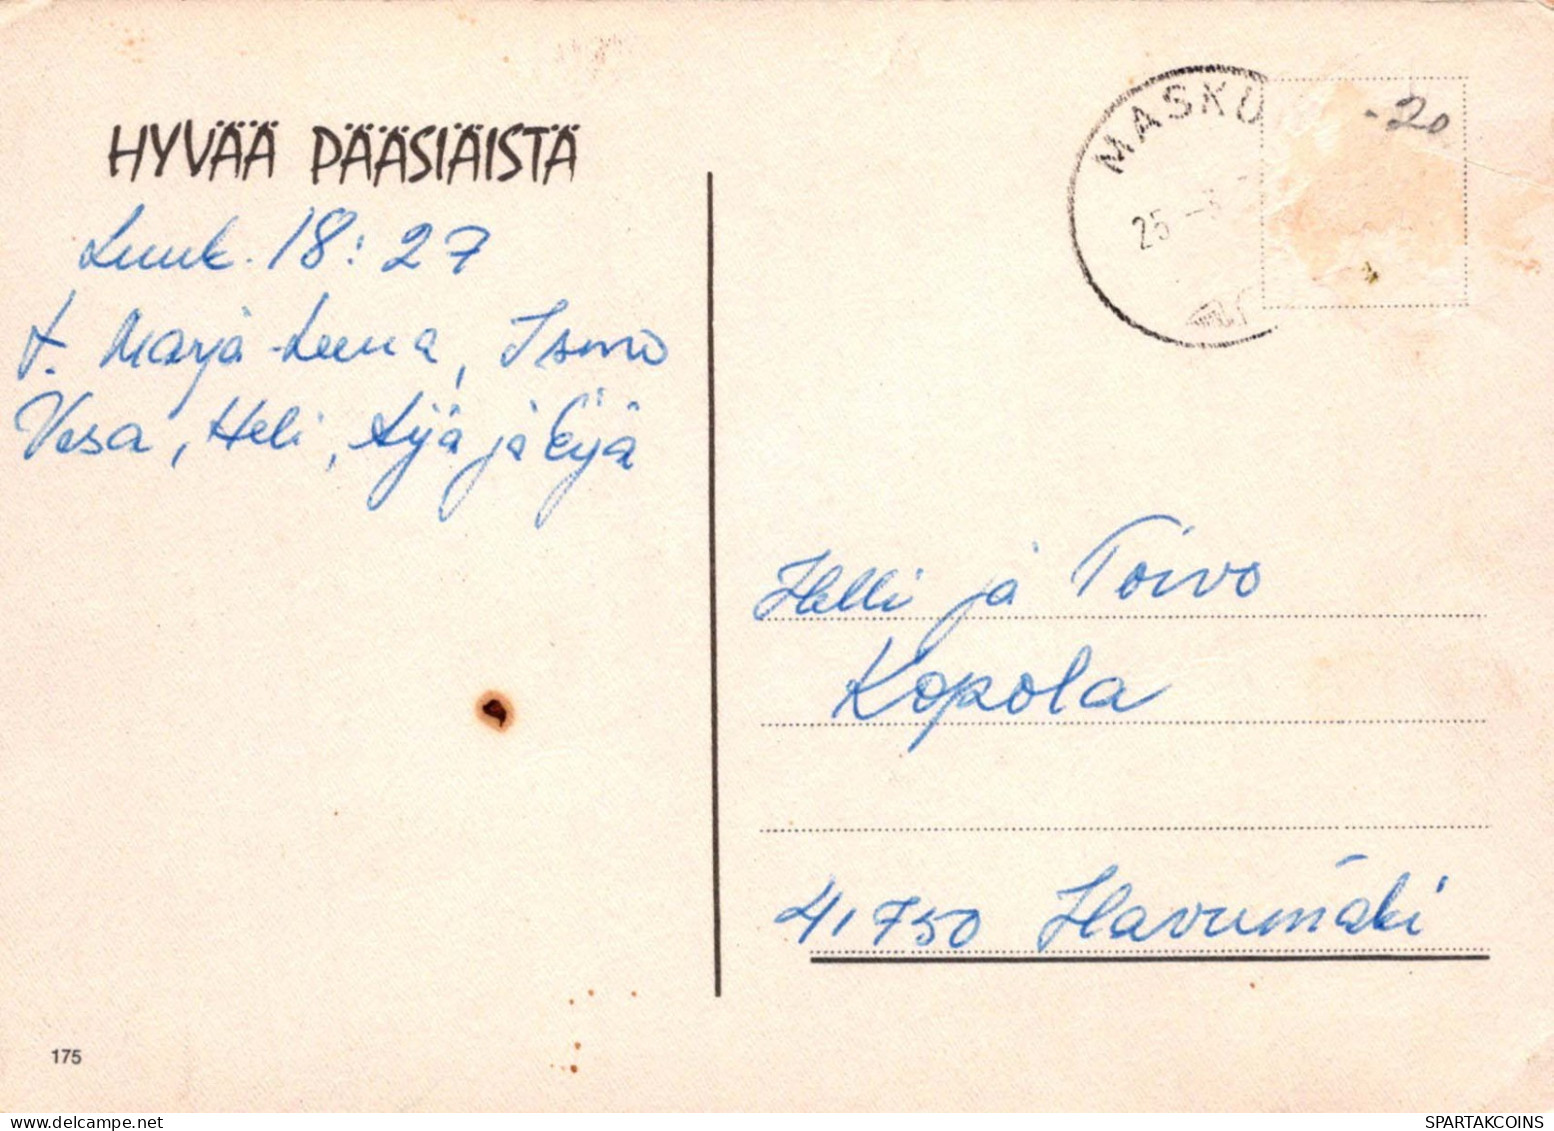 PASQUA POLLO UOVO Vintage Cartolina CPSM #PBO763.A - Easter